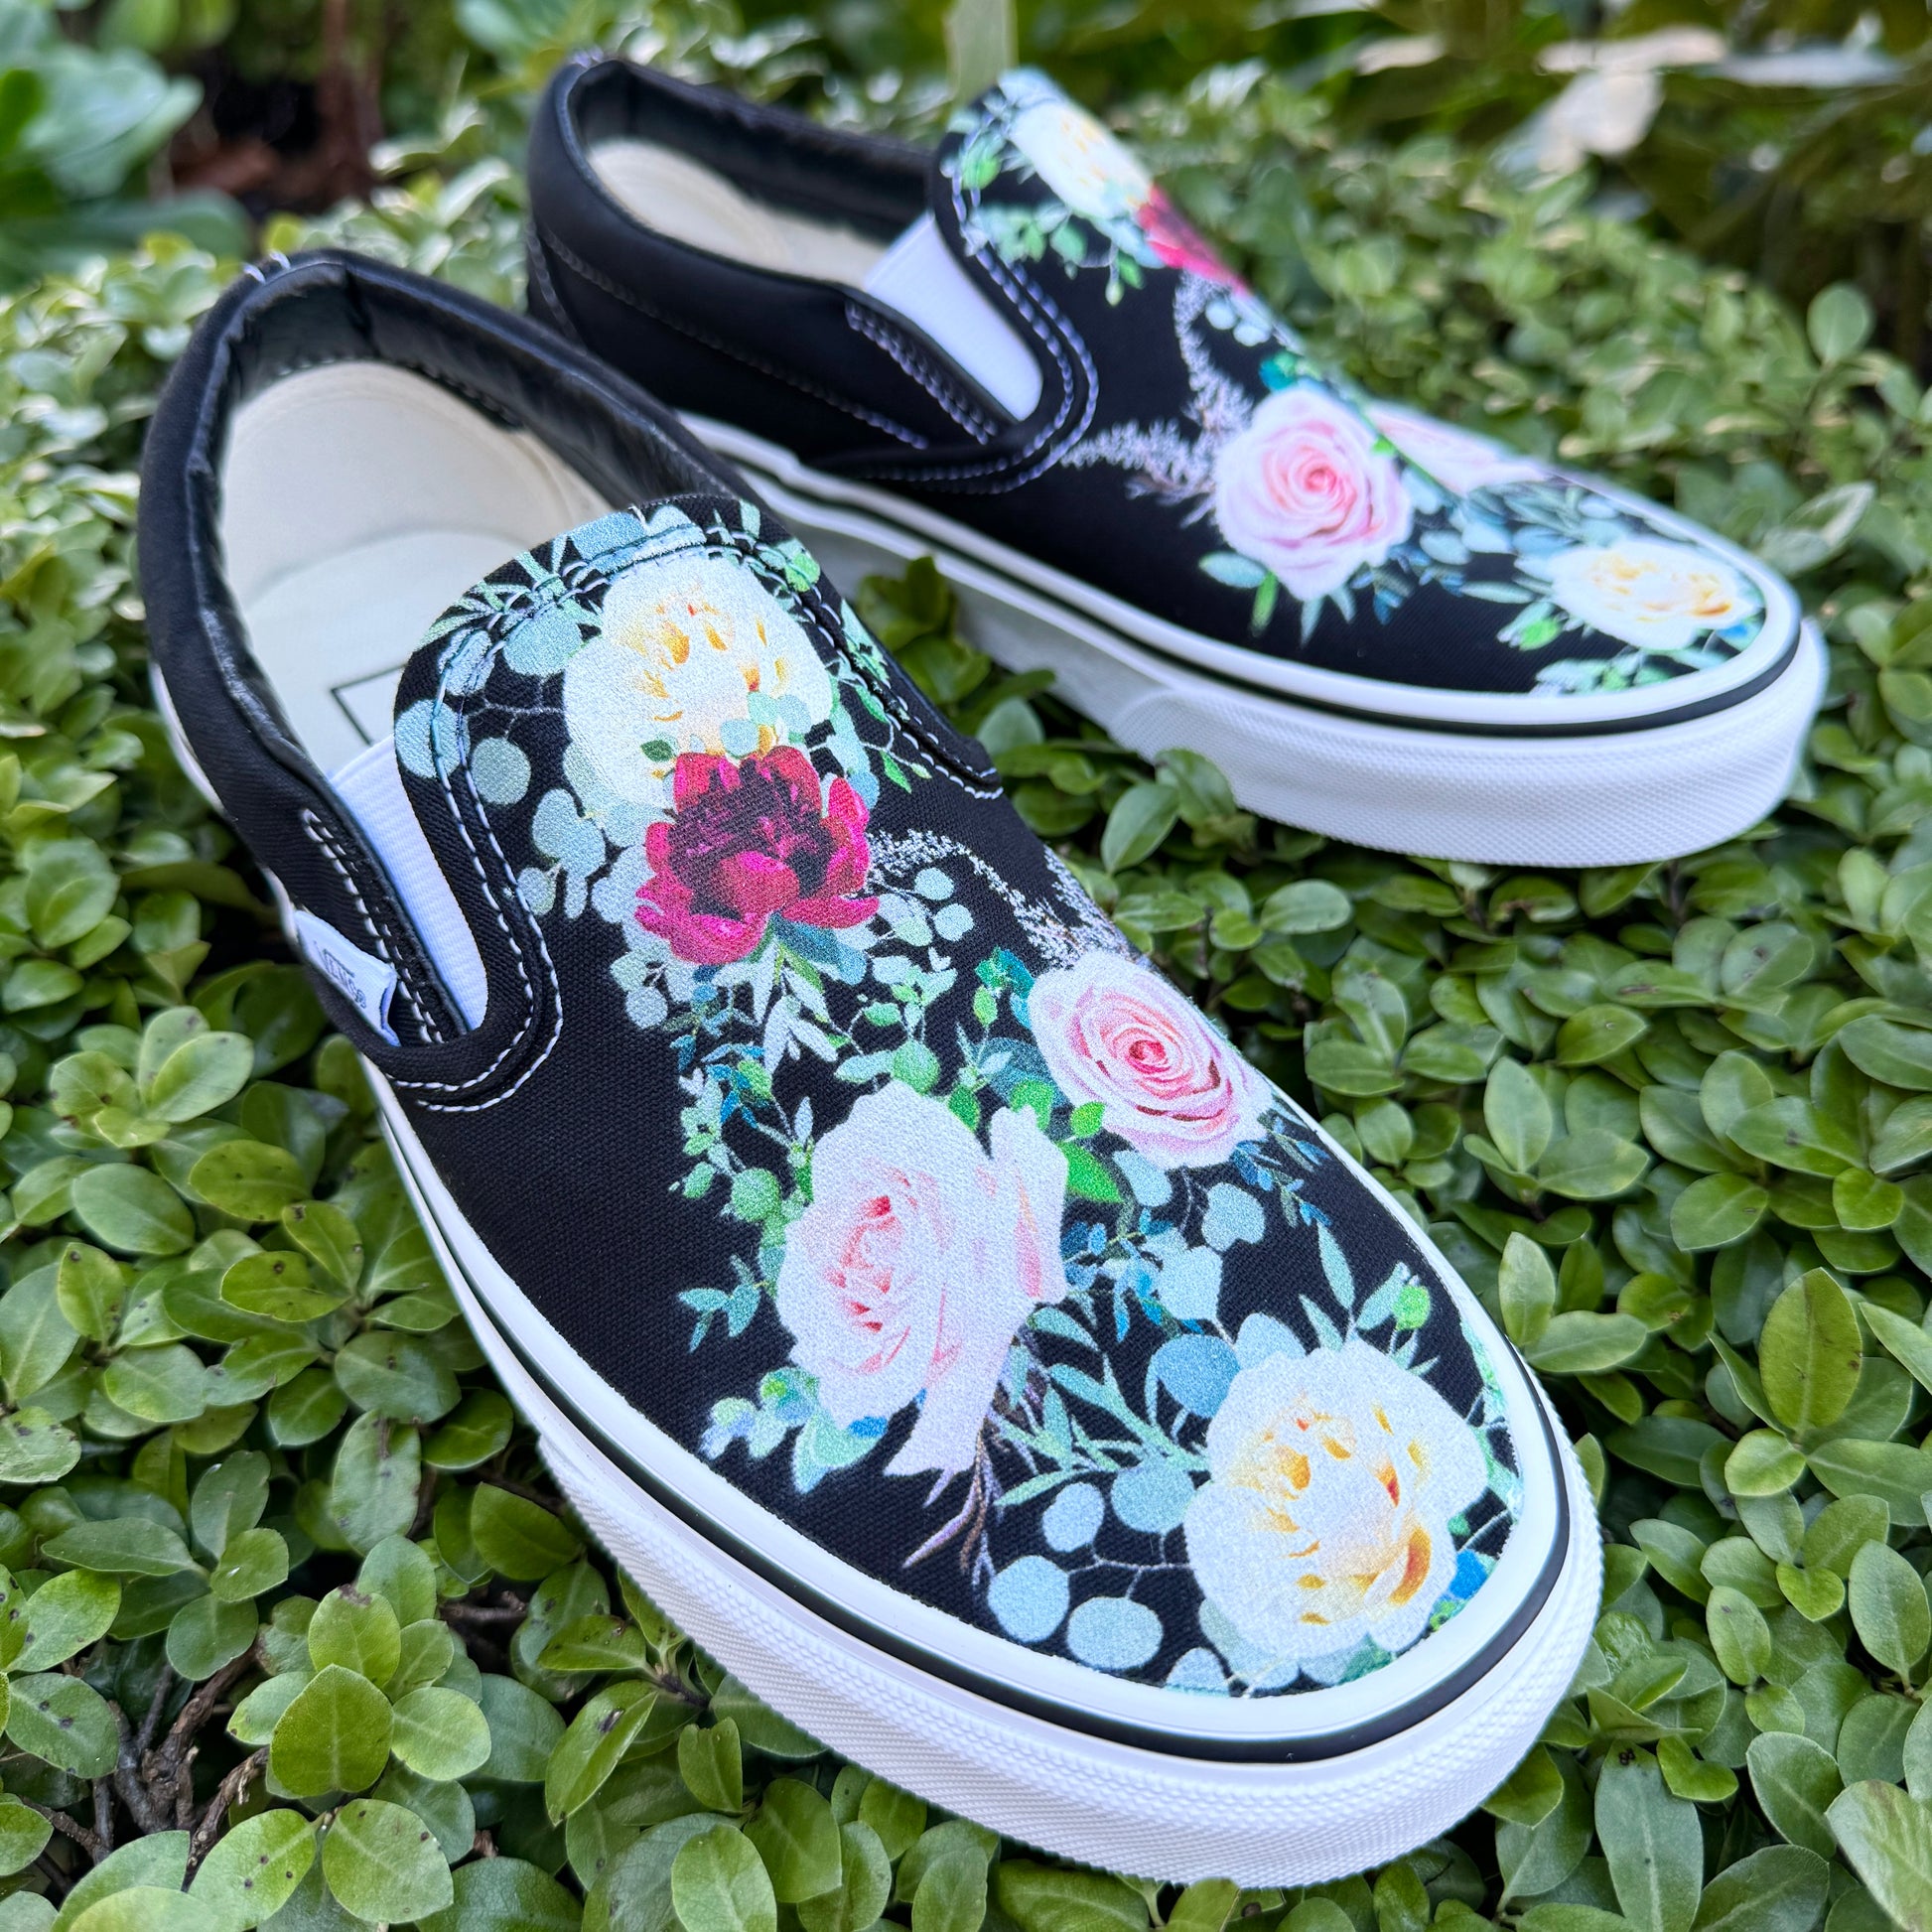 whimsical roses on black slip on Vans shoes custom